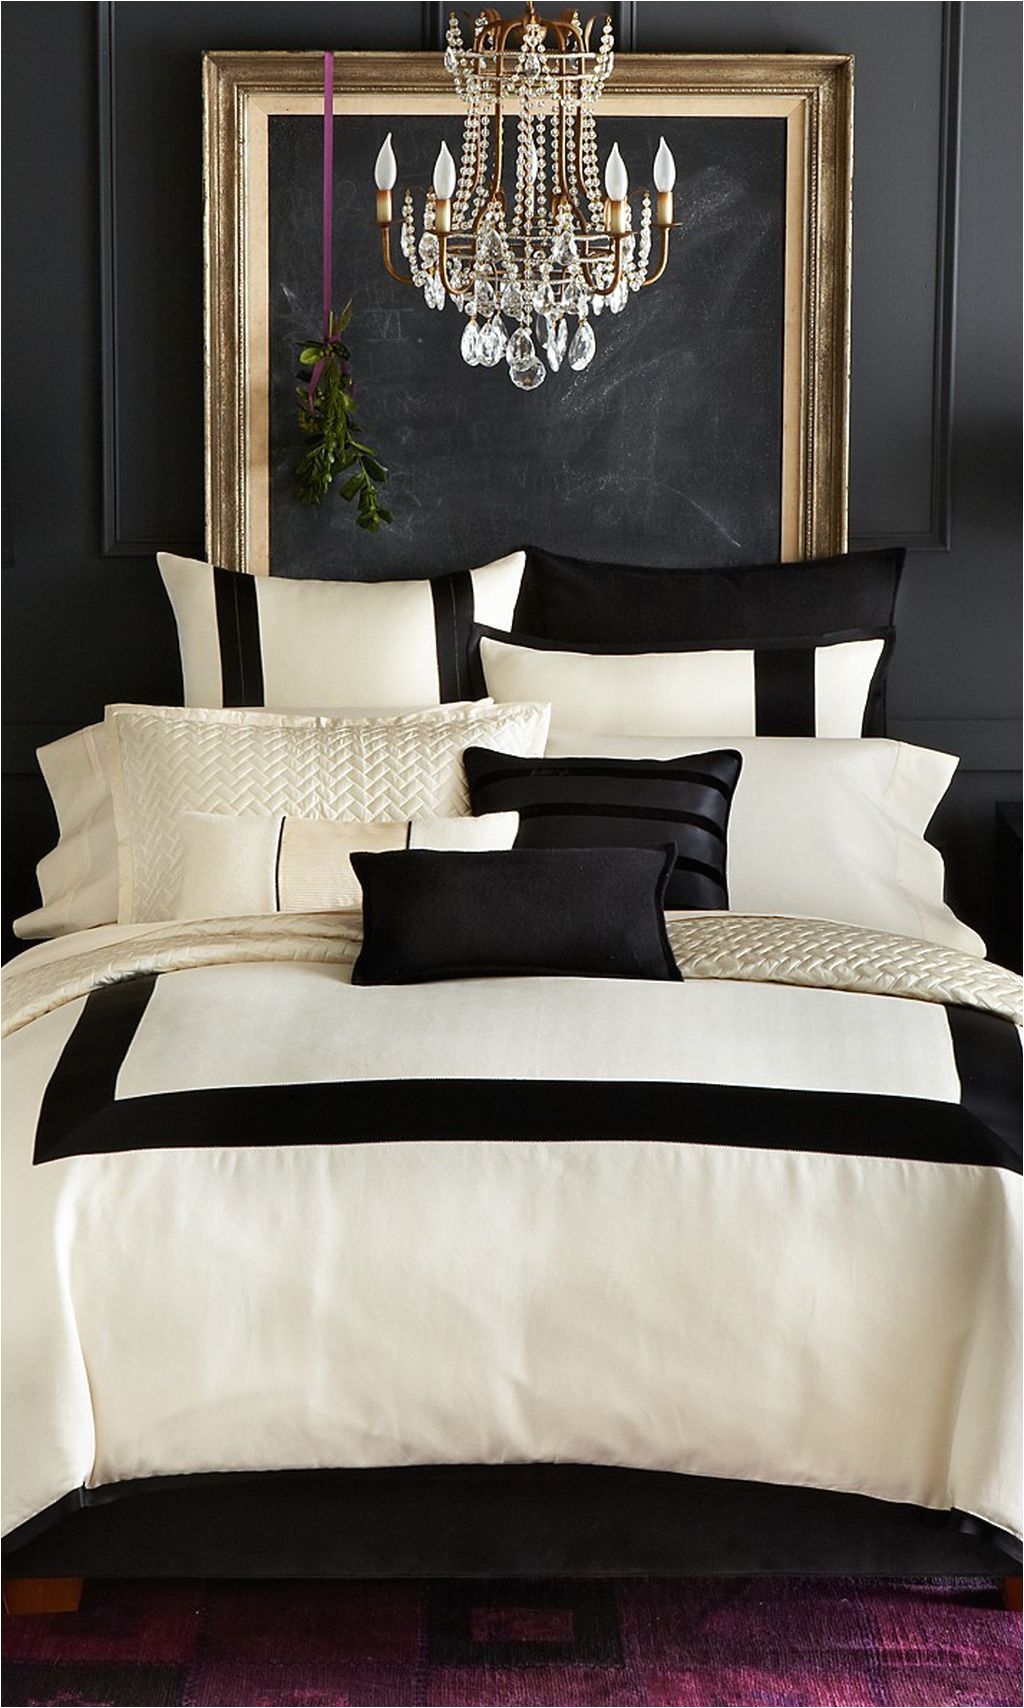 Cozy Master Bedroom Decorating Ideas 27